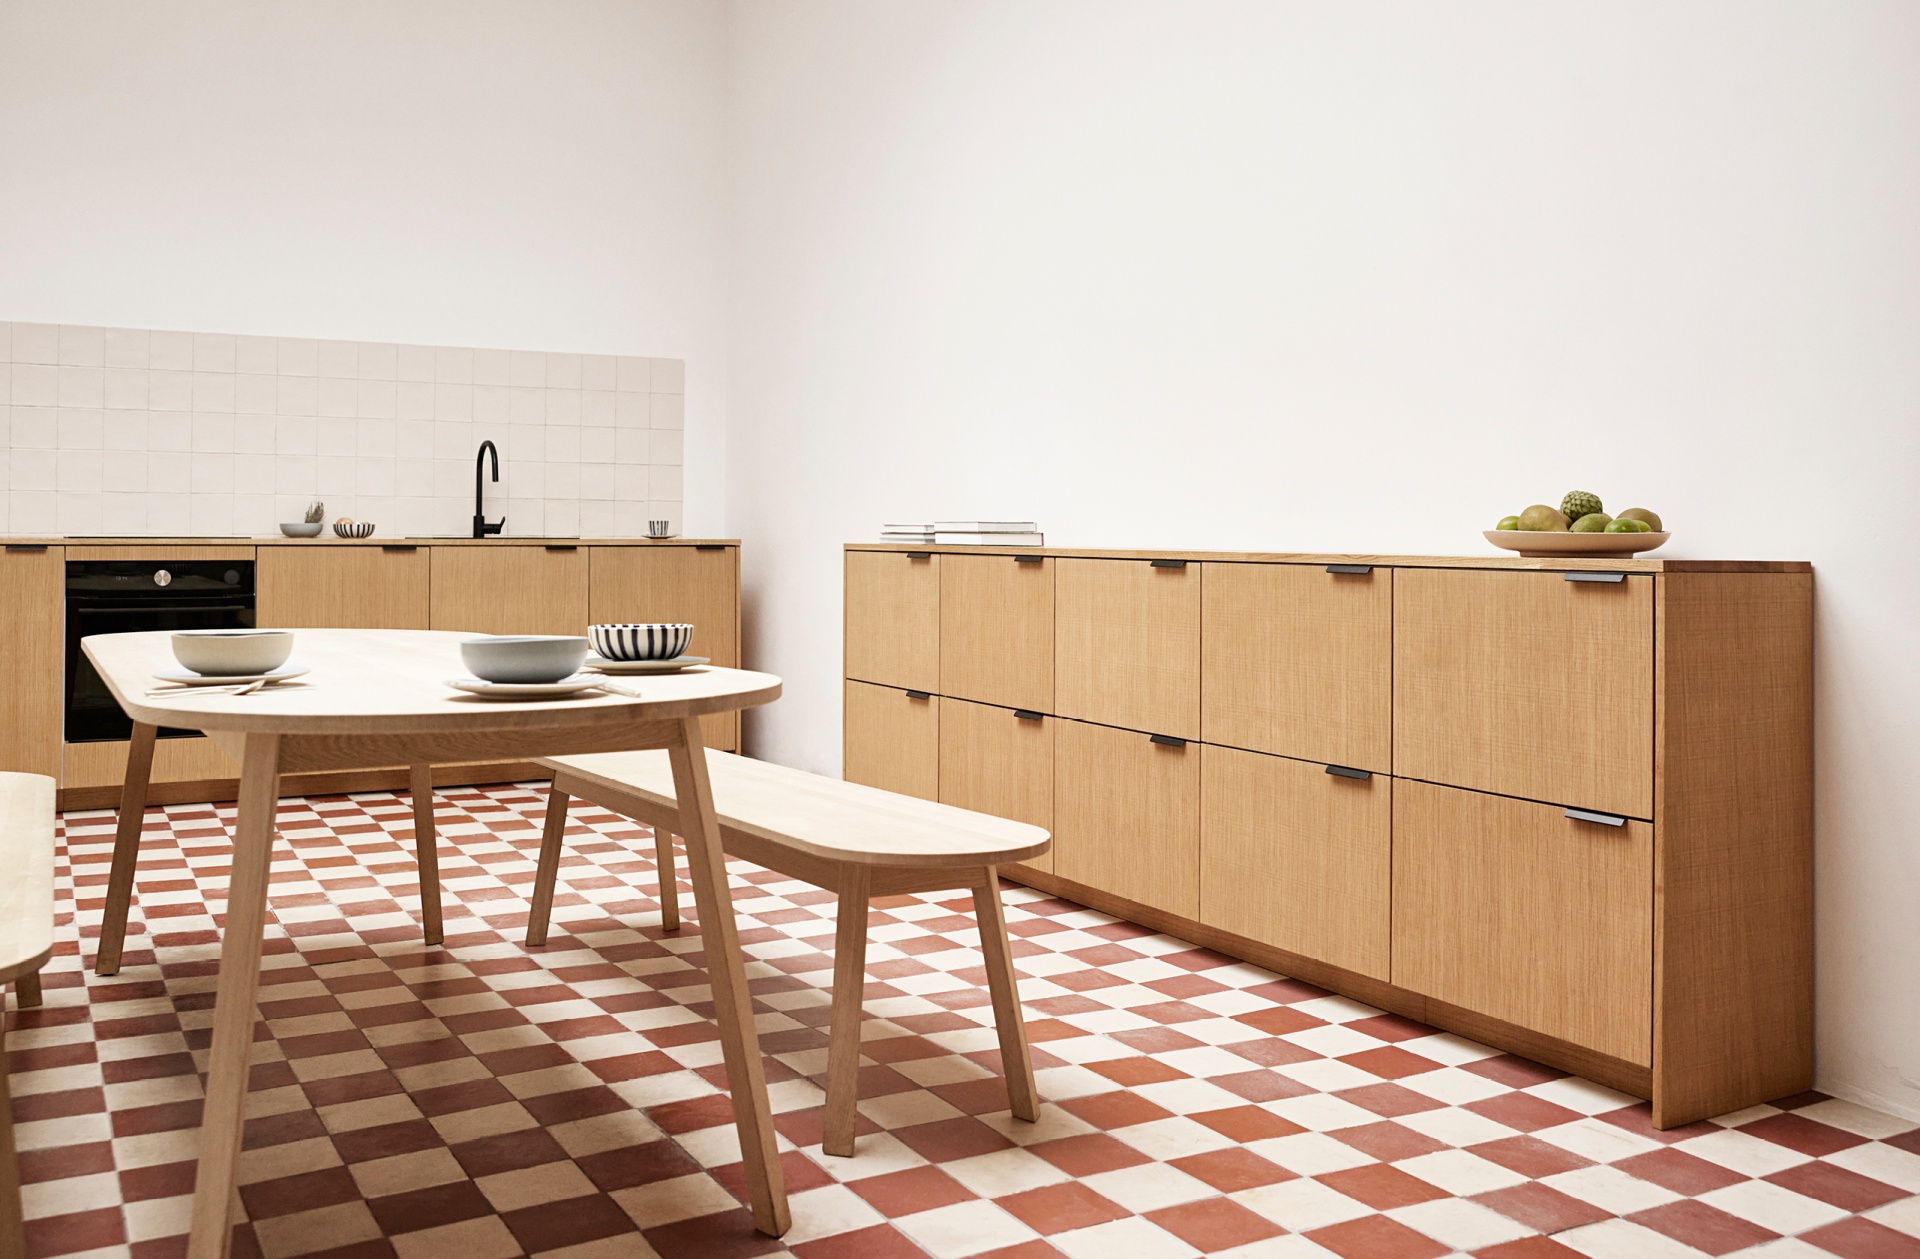 Kitchen in light oak and checkered kitchen floor